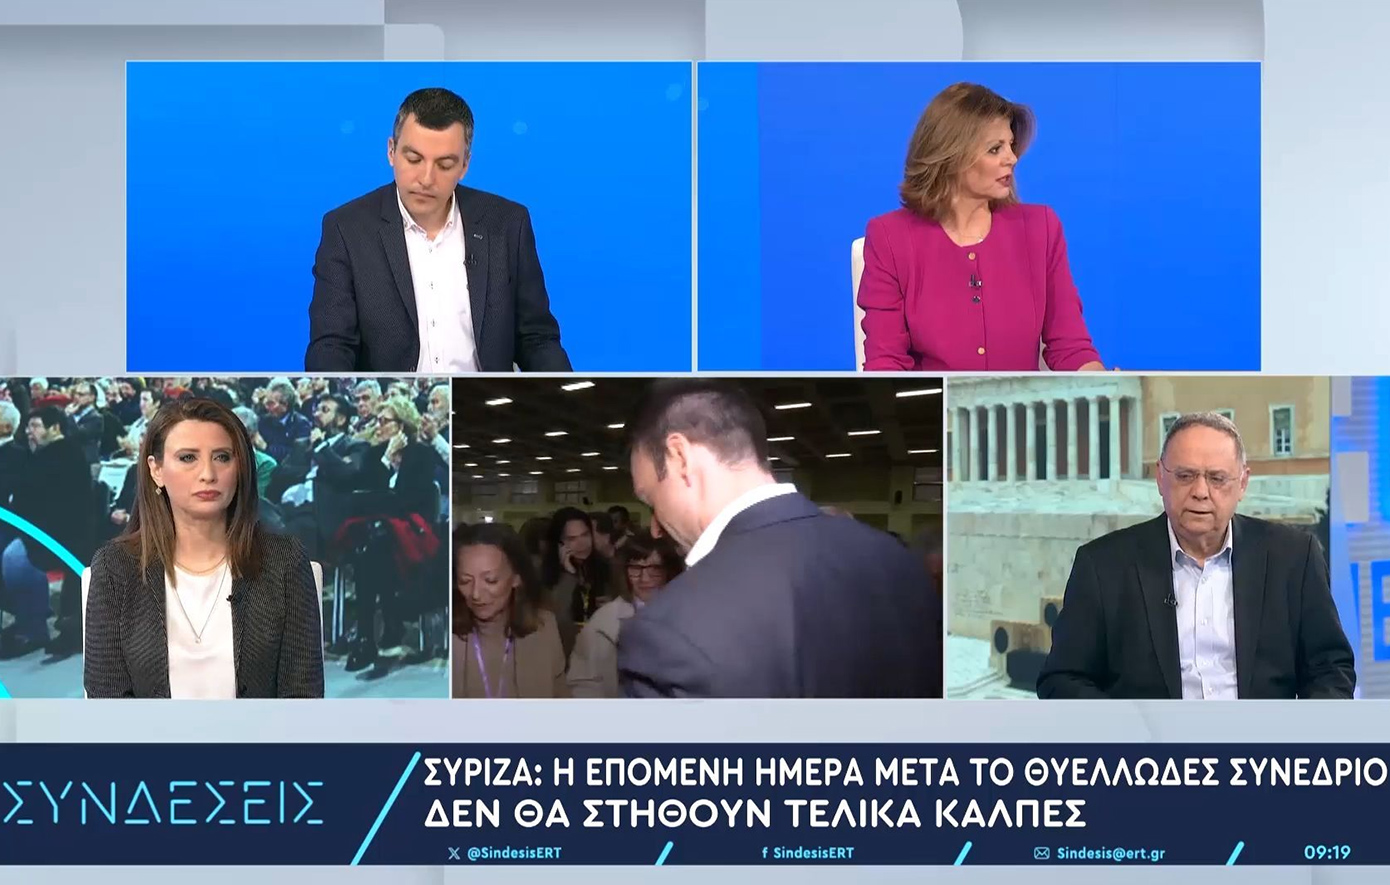 Νίνα Κασιμάτη &#8211; ΣΥΡΙΖΑ: Προφανώς θα κριθούμε όλοι στις ευρωεκλογές και σε κάθε εκλογική αναμέτρηση